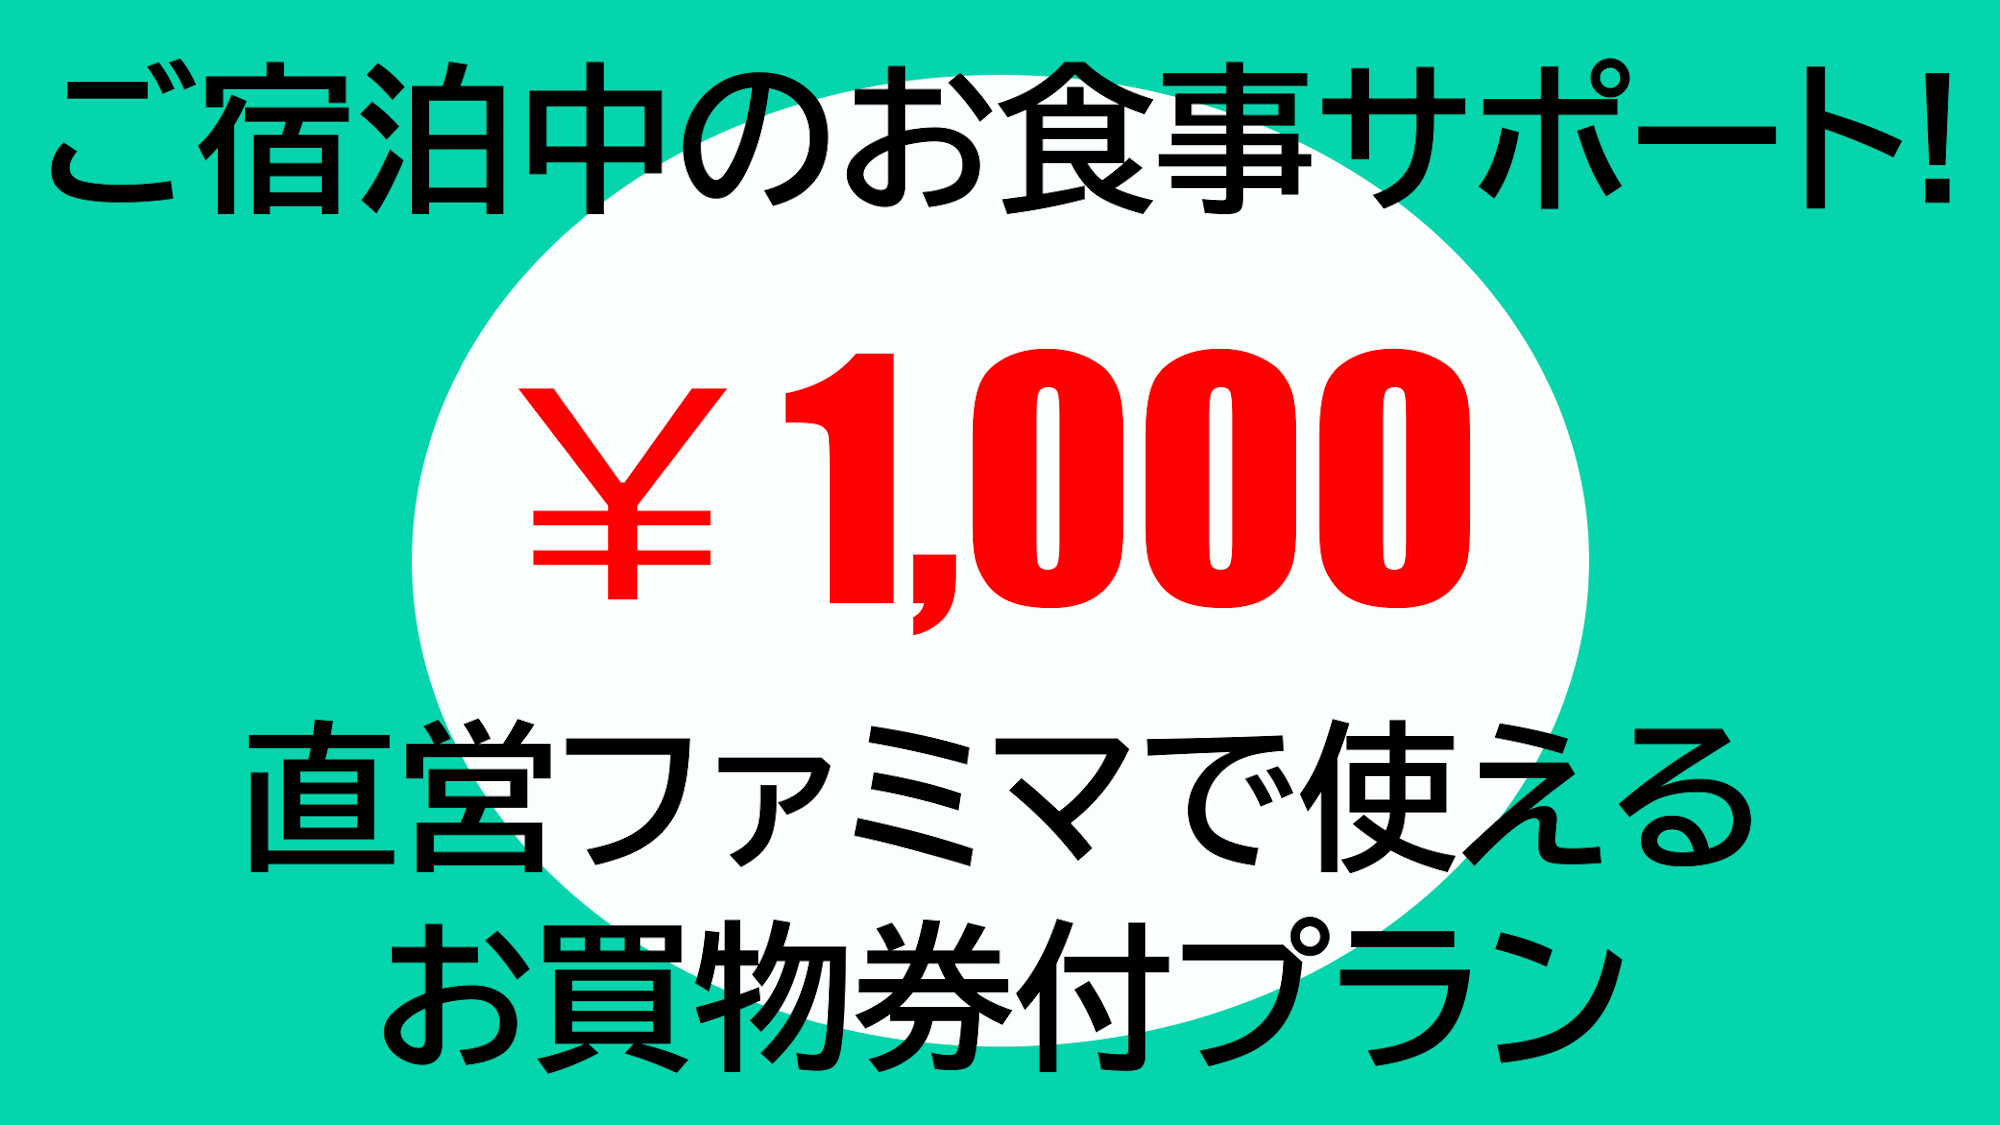 直営ファミリーマート1000円お買物補助券付プラン